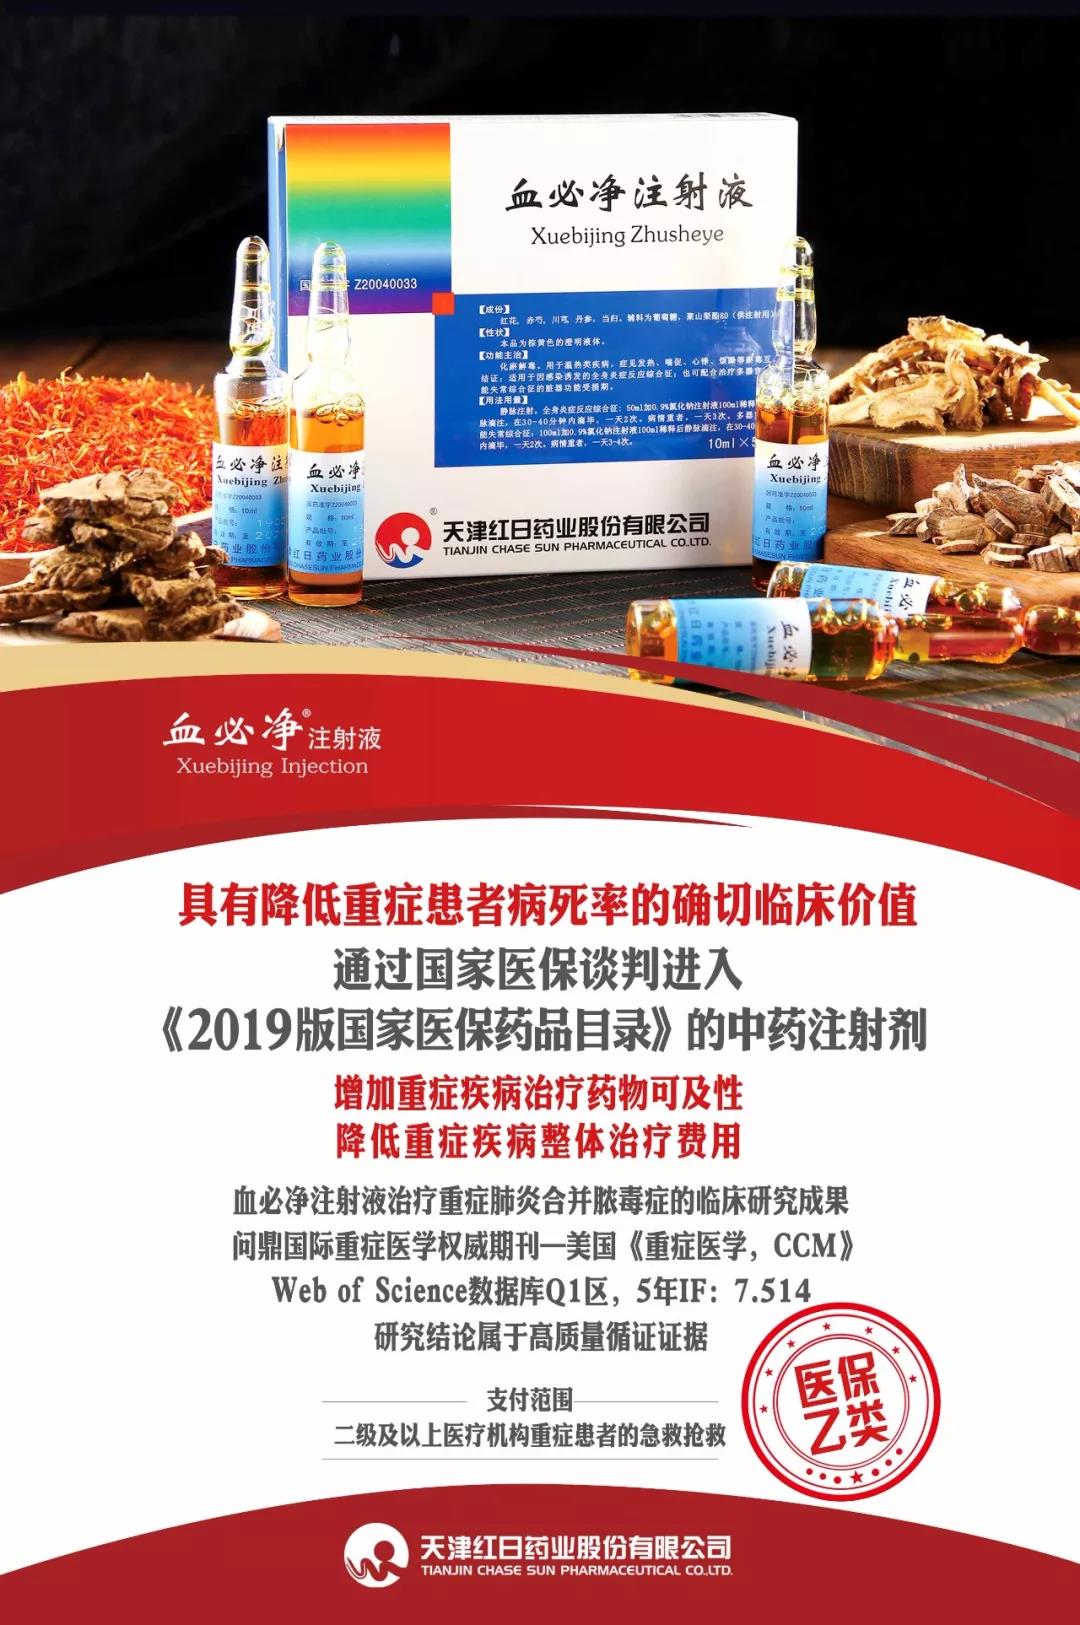 血型分析仪-广州迈志医疗自动化设备有限公司